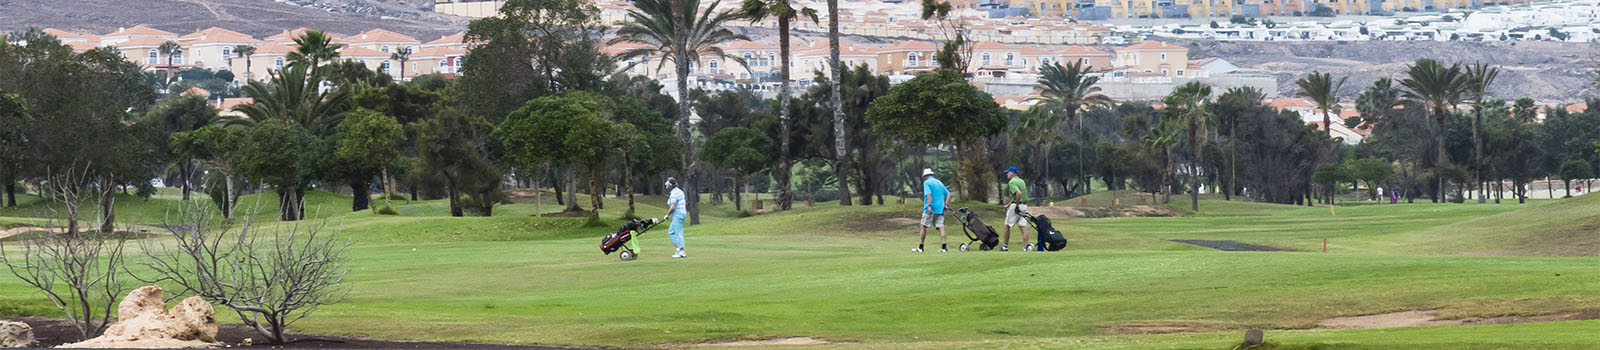 Golfen auf Fuerteventura: Costa Antigua – Golf Club Fuerteventura.